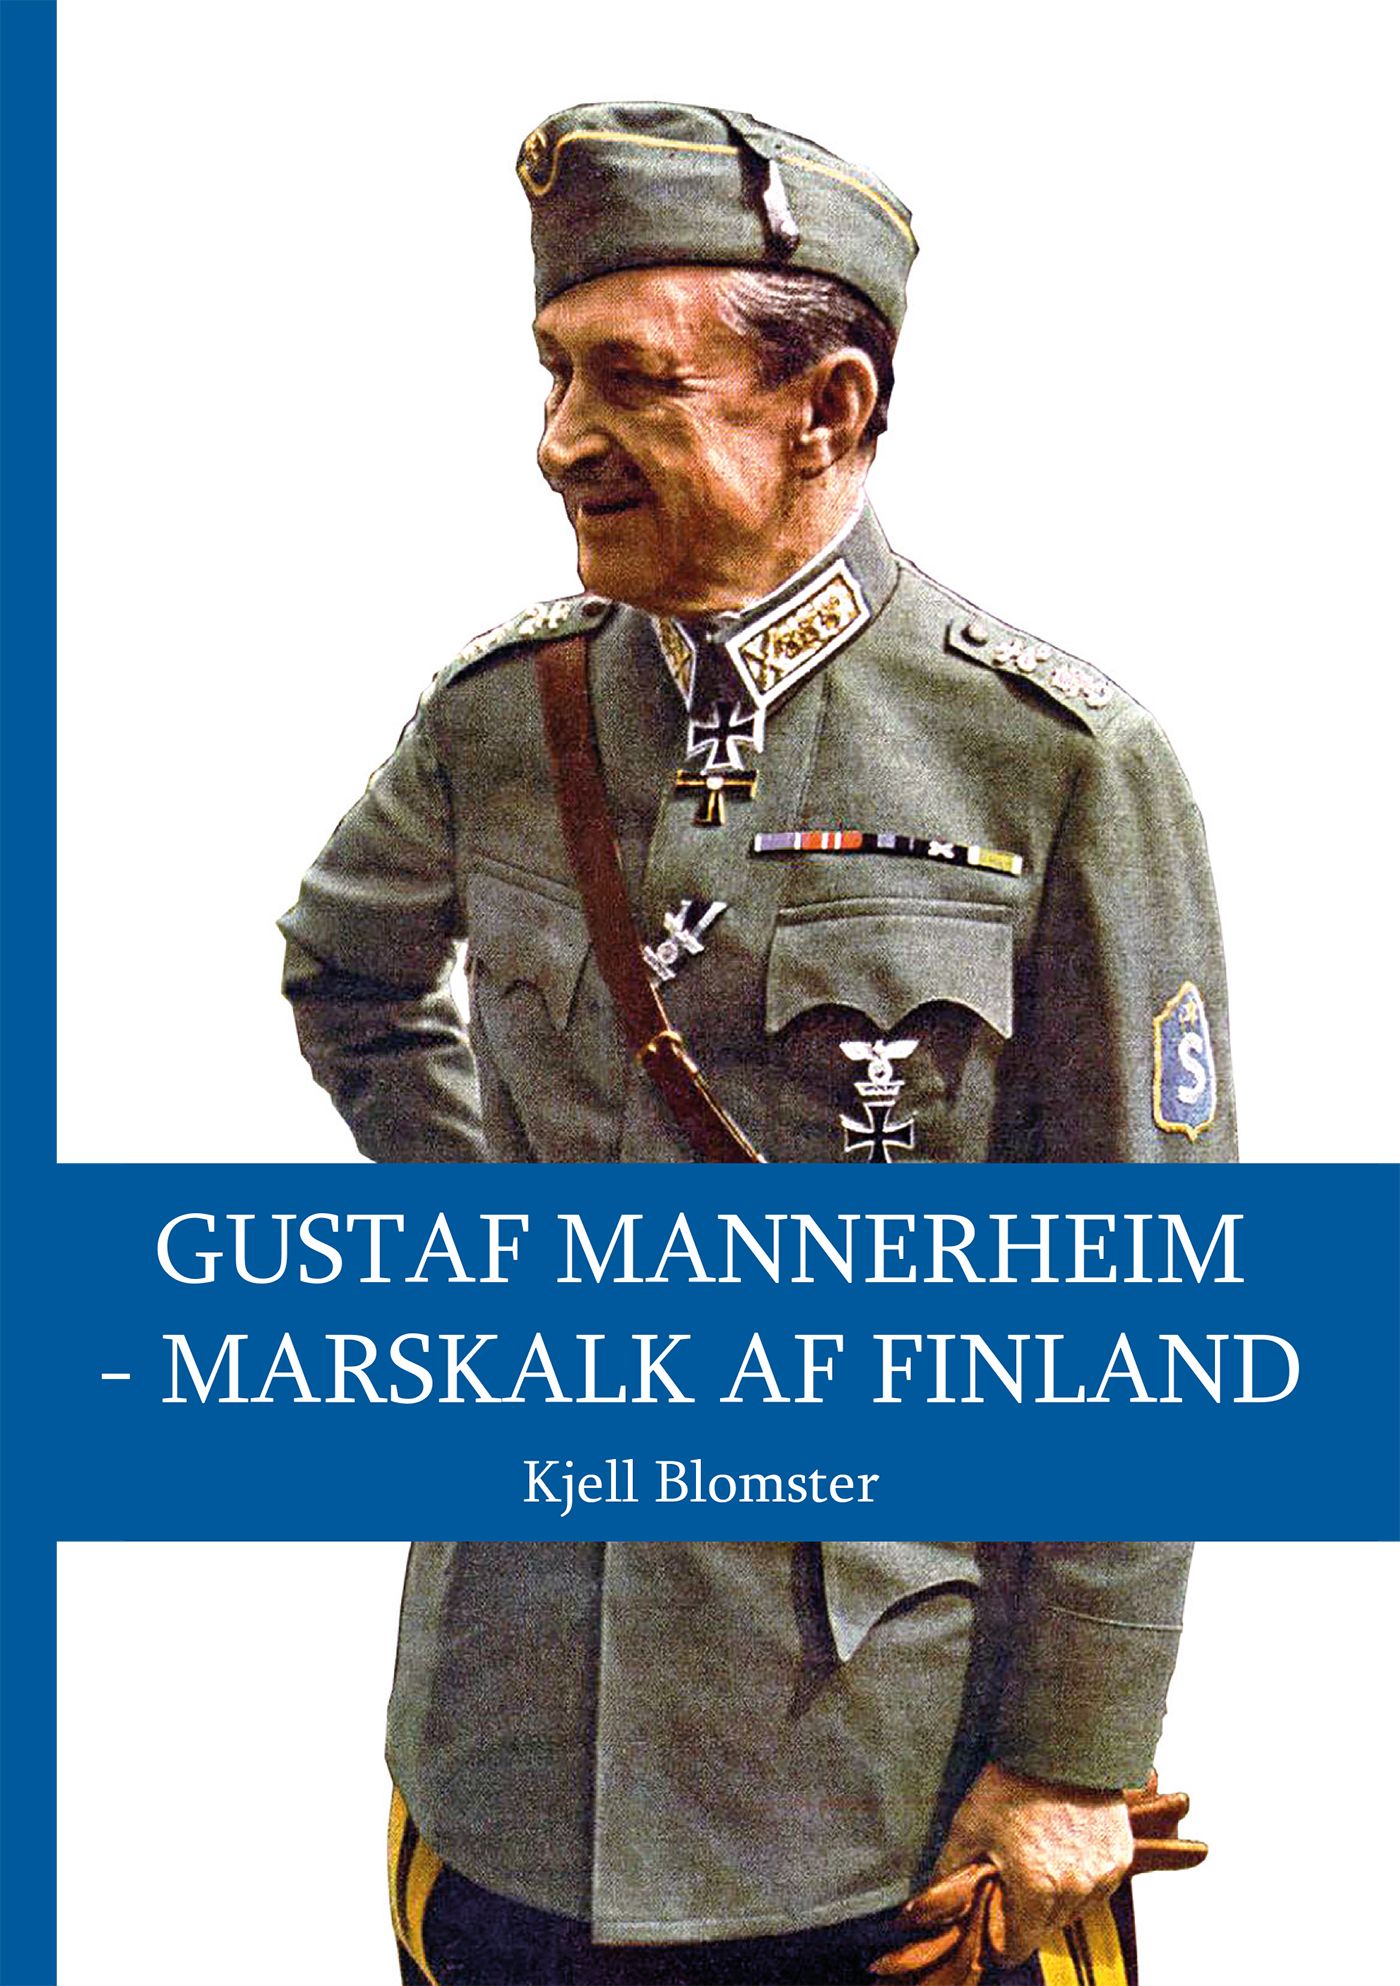 Gustaf Mannerheim - Marskalk af Finland, e-bok av Kjell Blomster